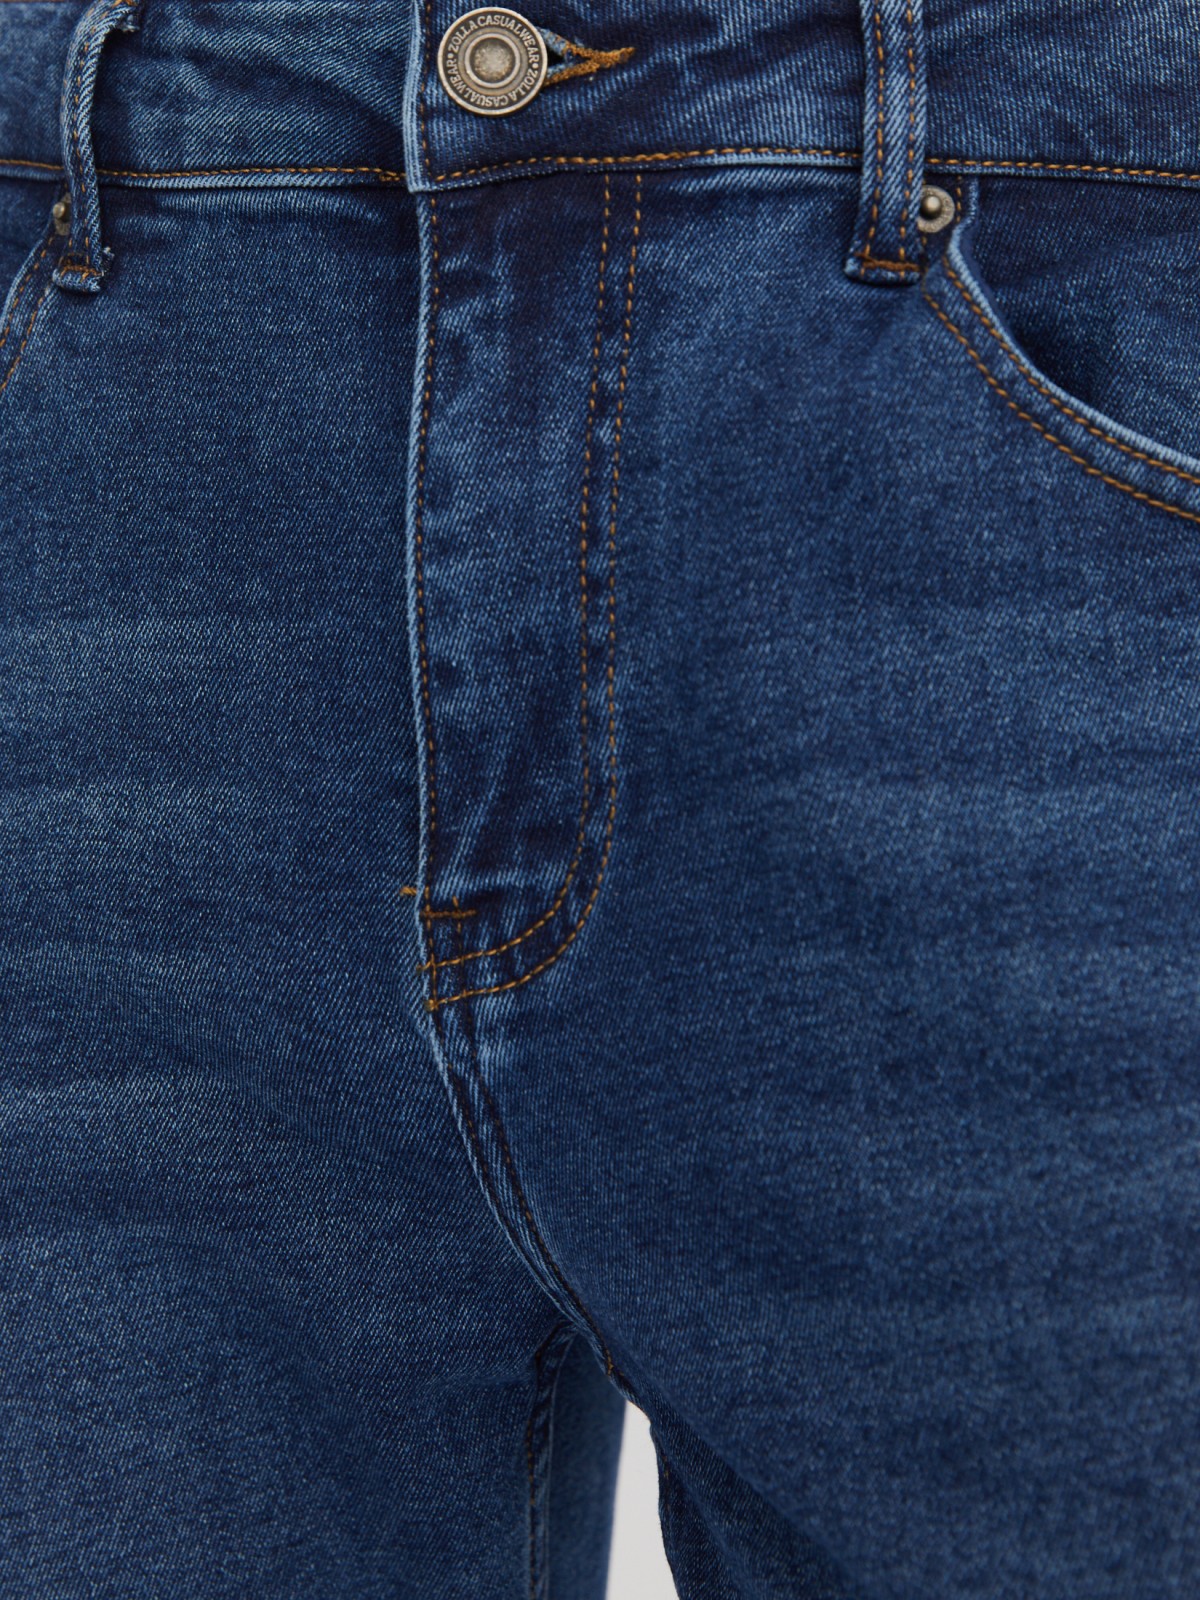 Утеплённые джинсы прямого фасона Regular с начёсом внутри